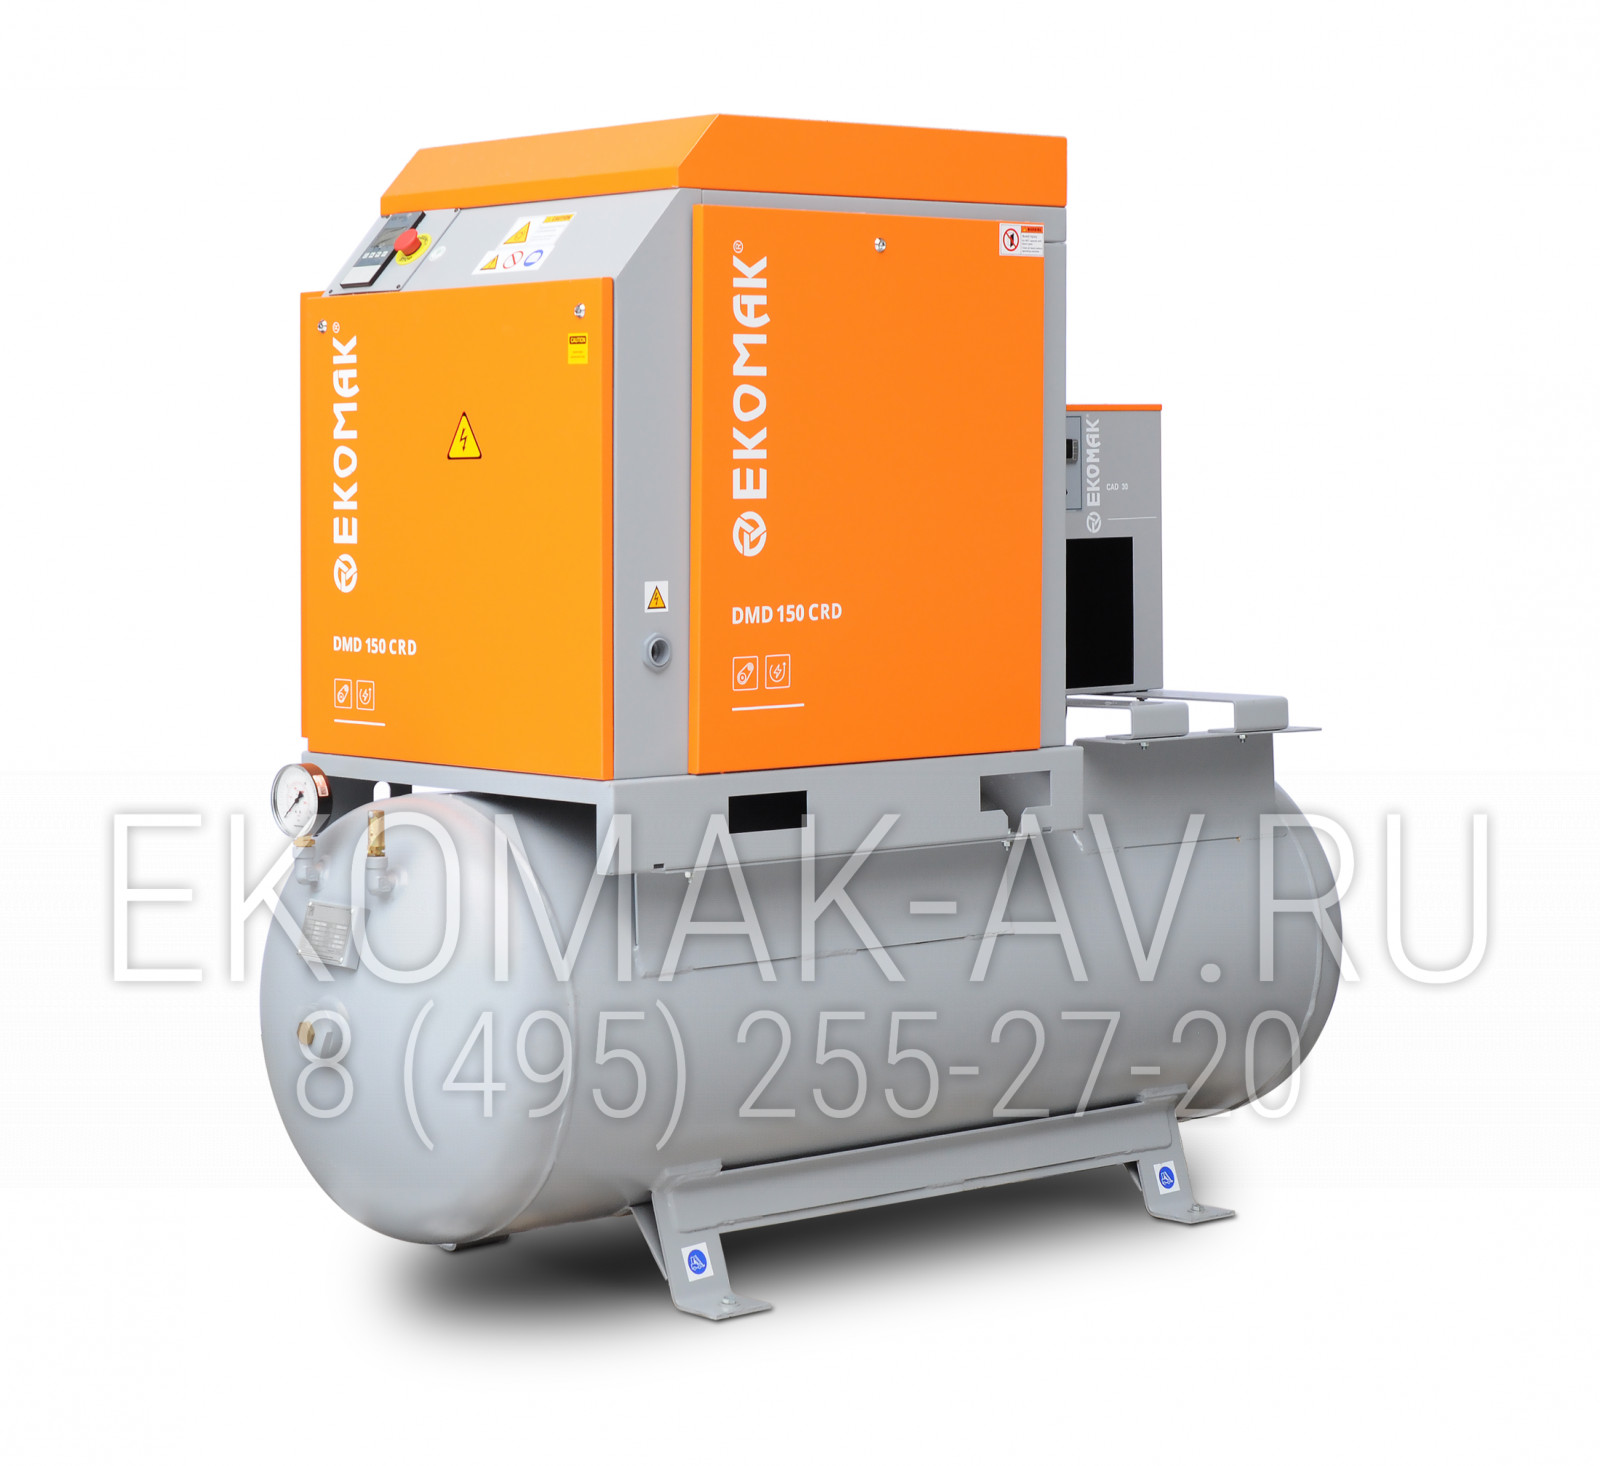 Винтовой компрессор Ekomak DMD 150 CRD 10